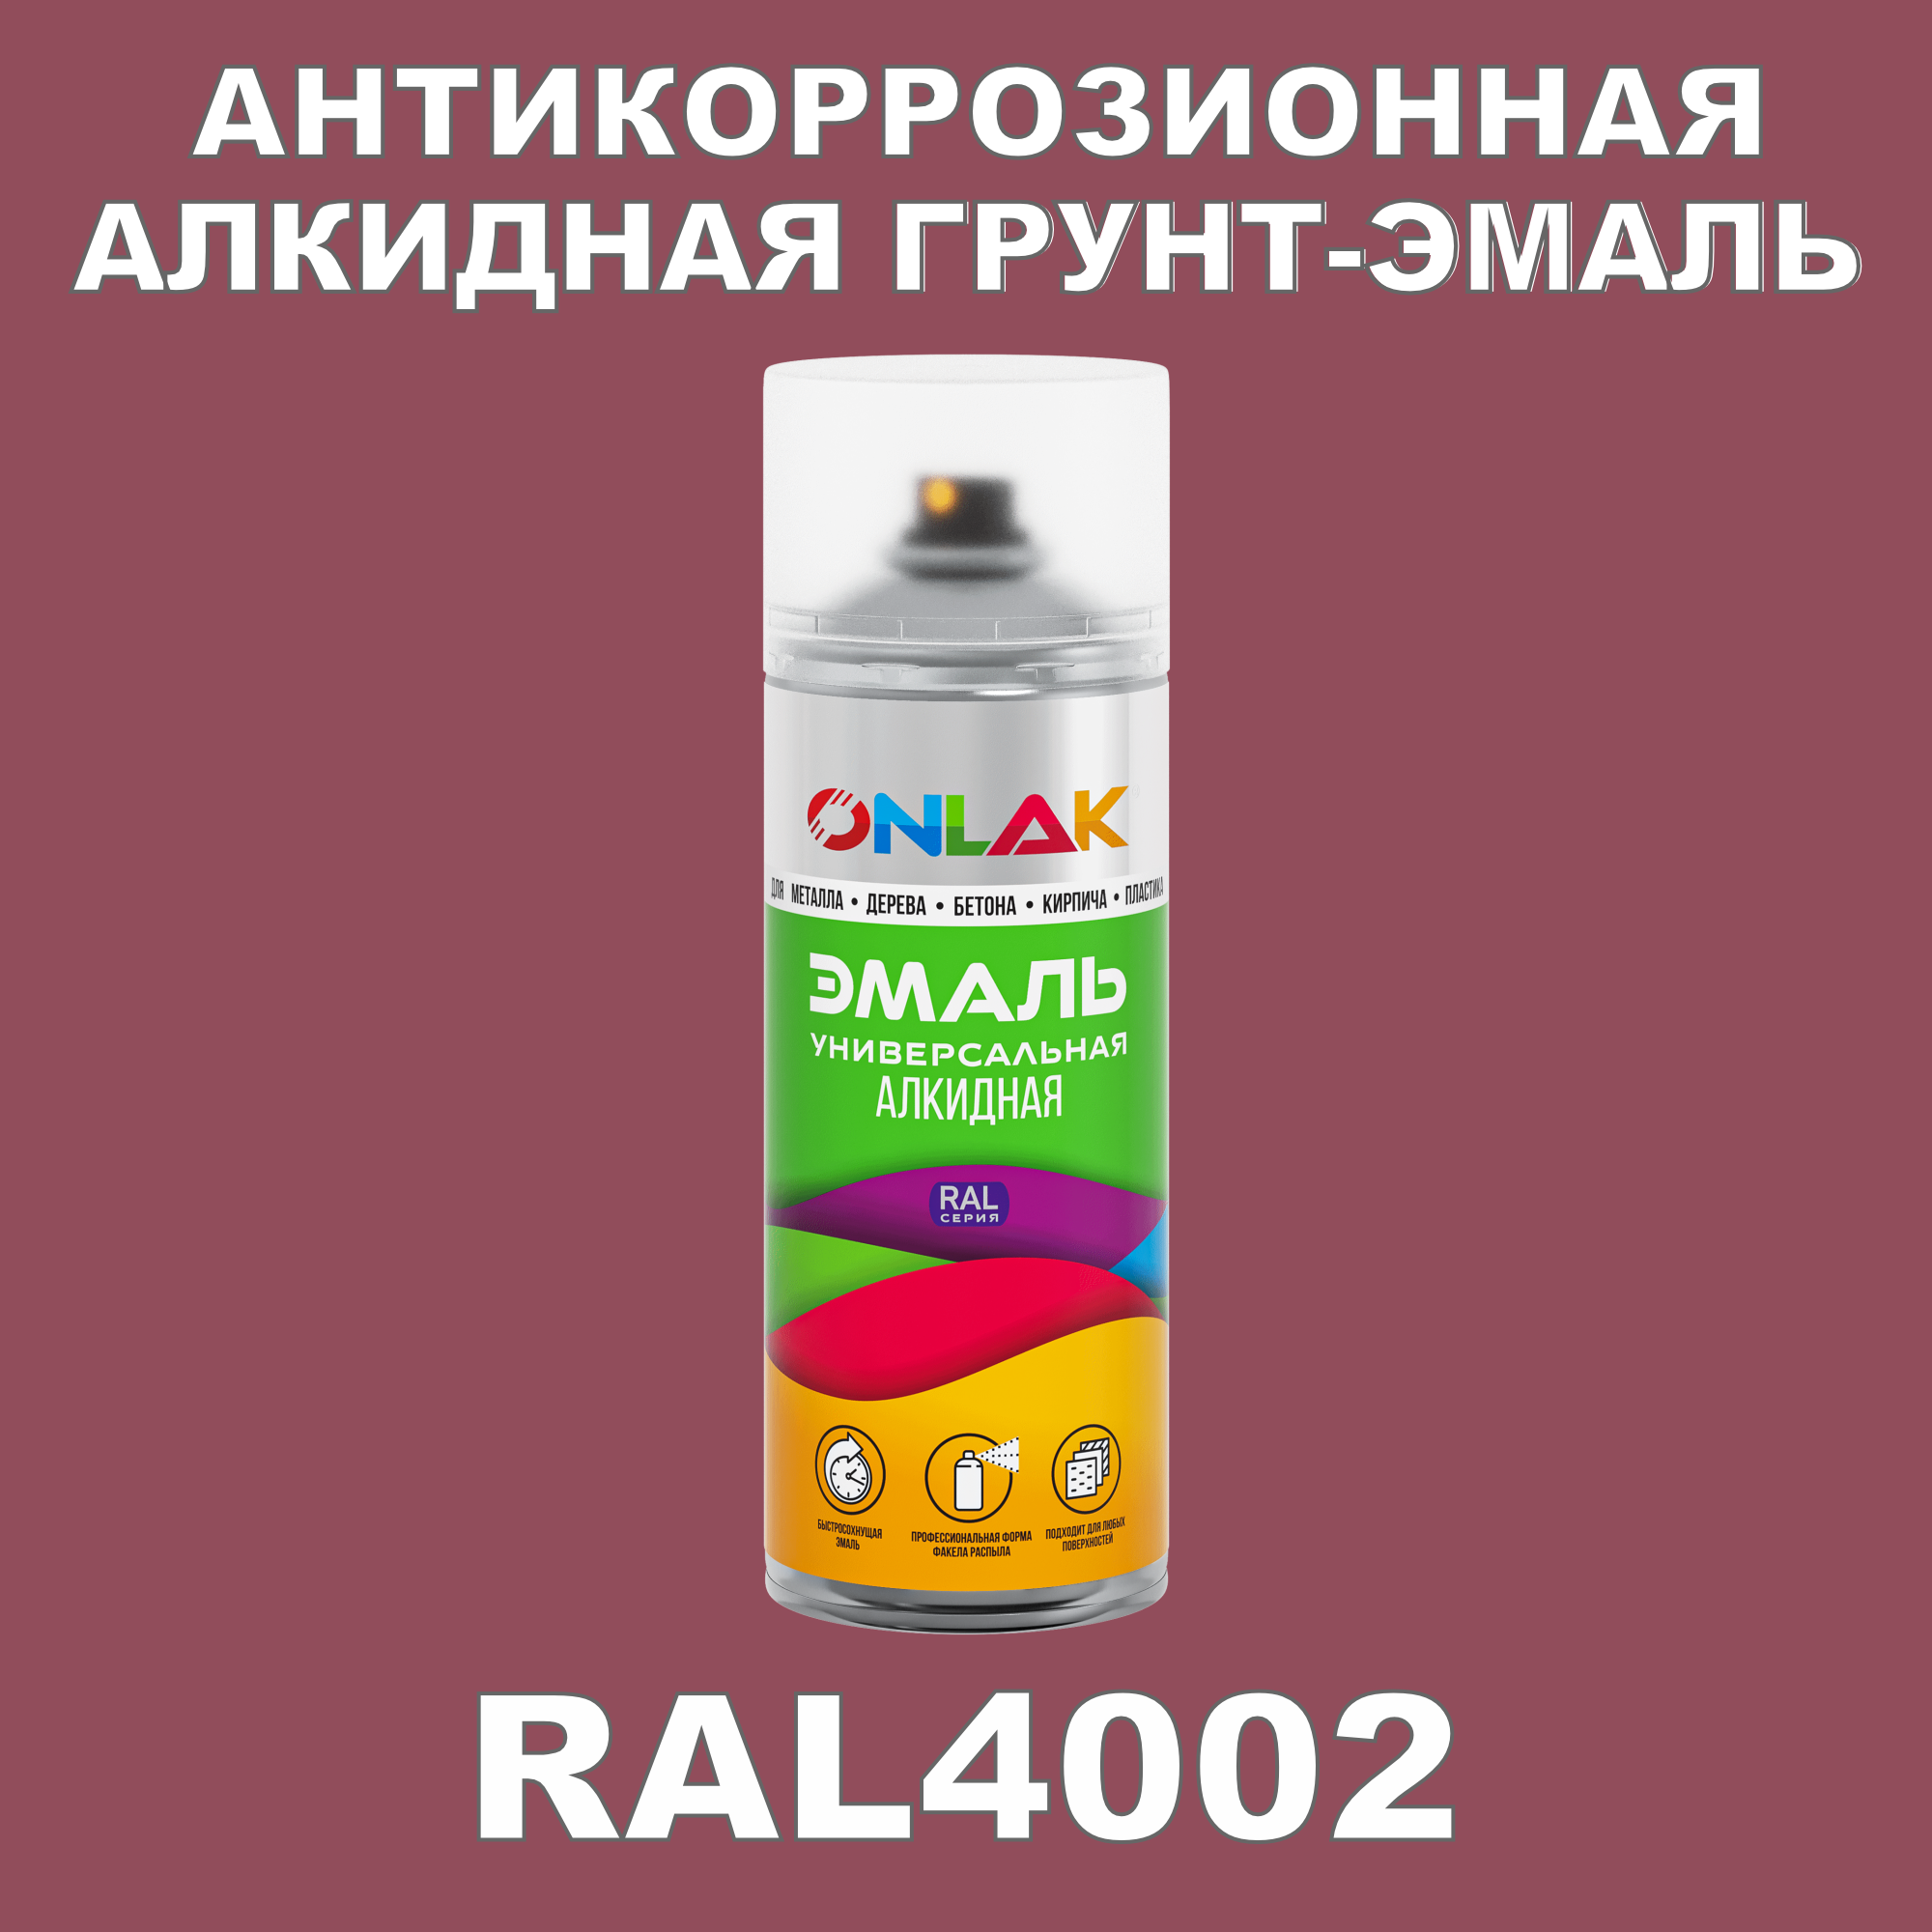 Антикоррозионная грунт-эмаль ONLAK RAL4002 полуматовая для металла и защиты от ржавчины